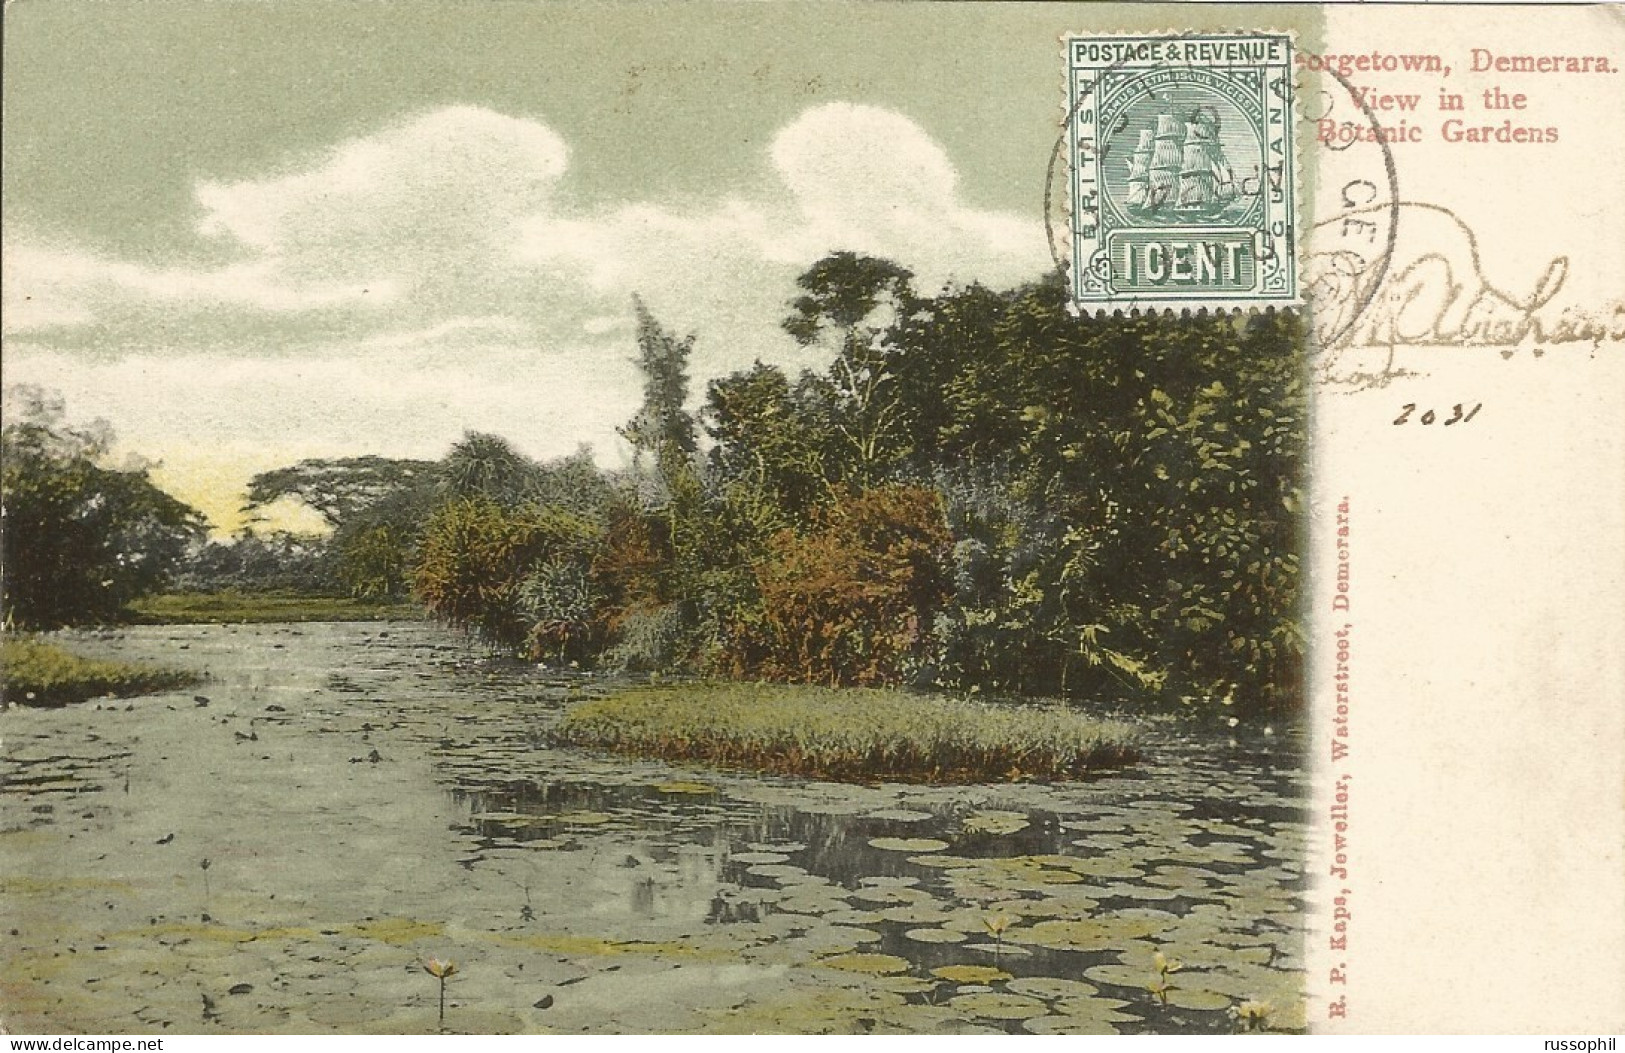 GUYANA - BRITISH GUYANA - GEORGETOWN, DEMERARA. VIEW IN THE BOTANIC GARDENS - ED. KAPS - 1906 - Guyana (ex Guyana Britannica)